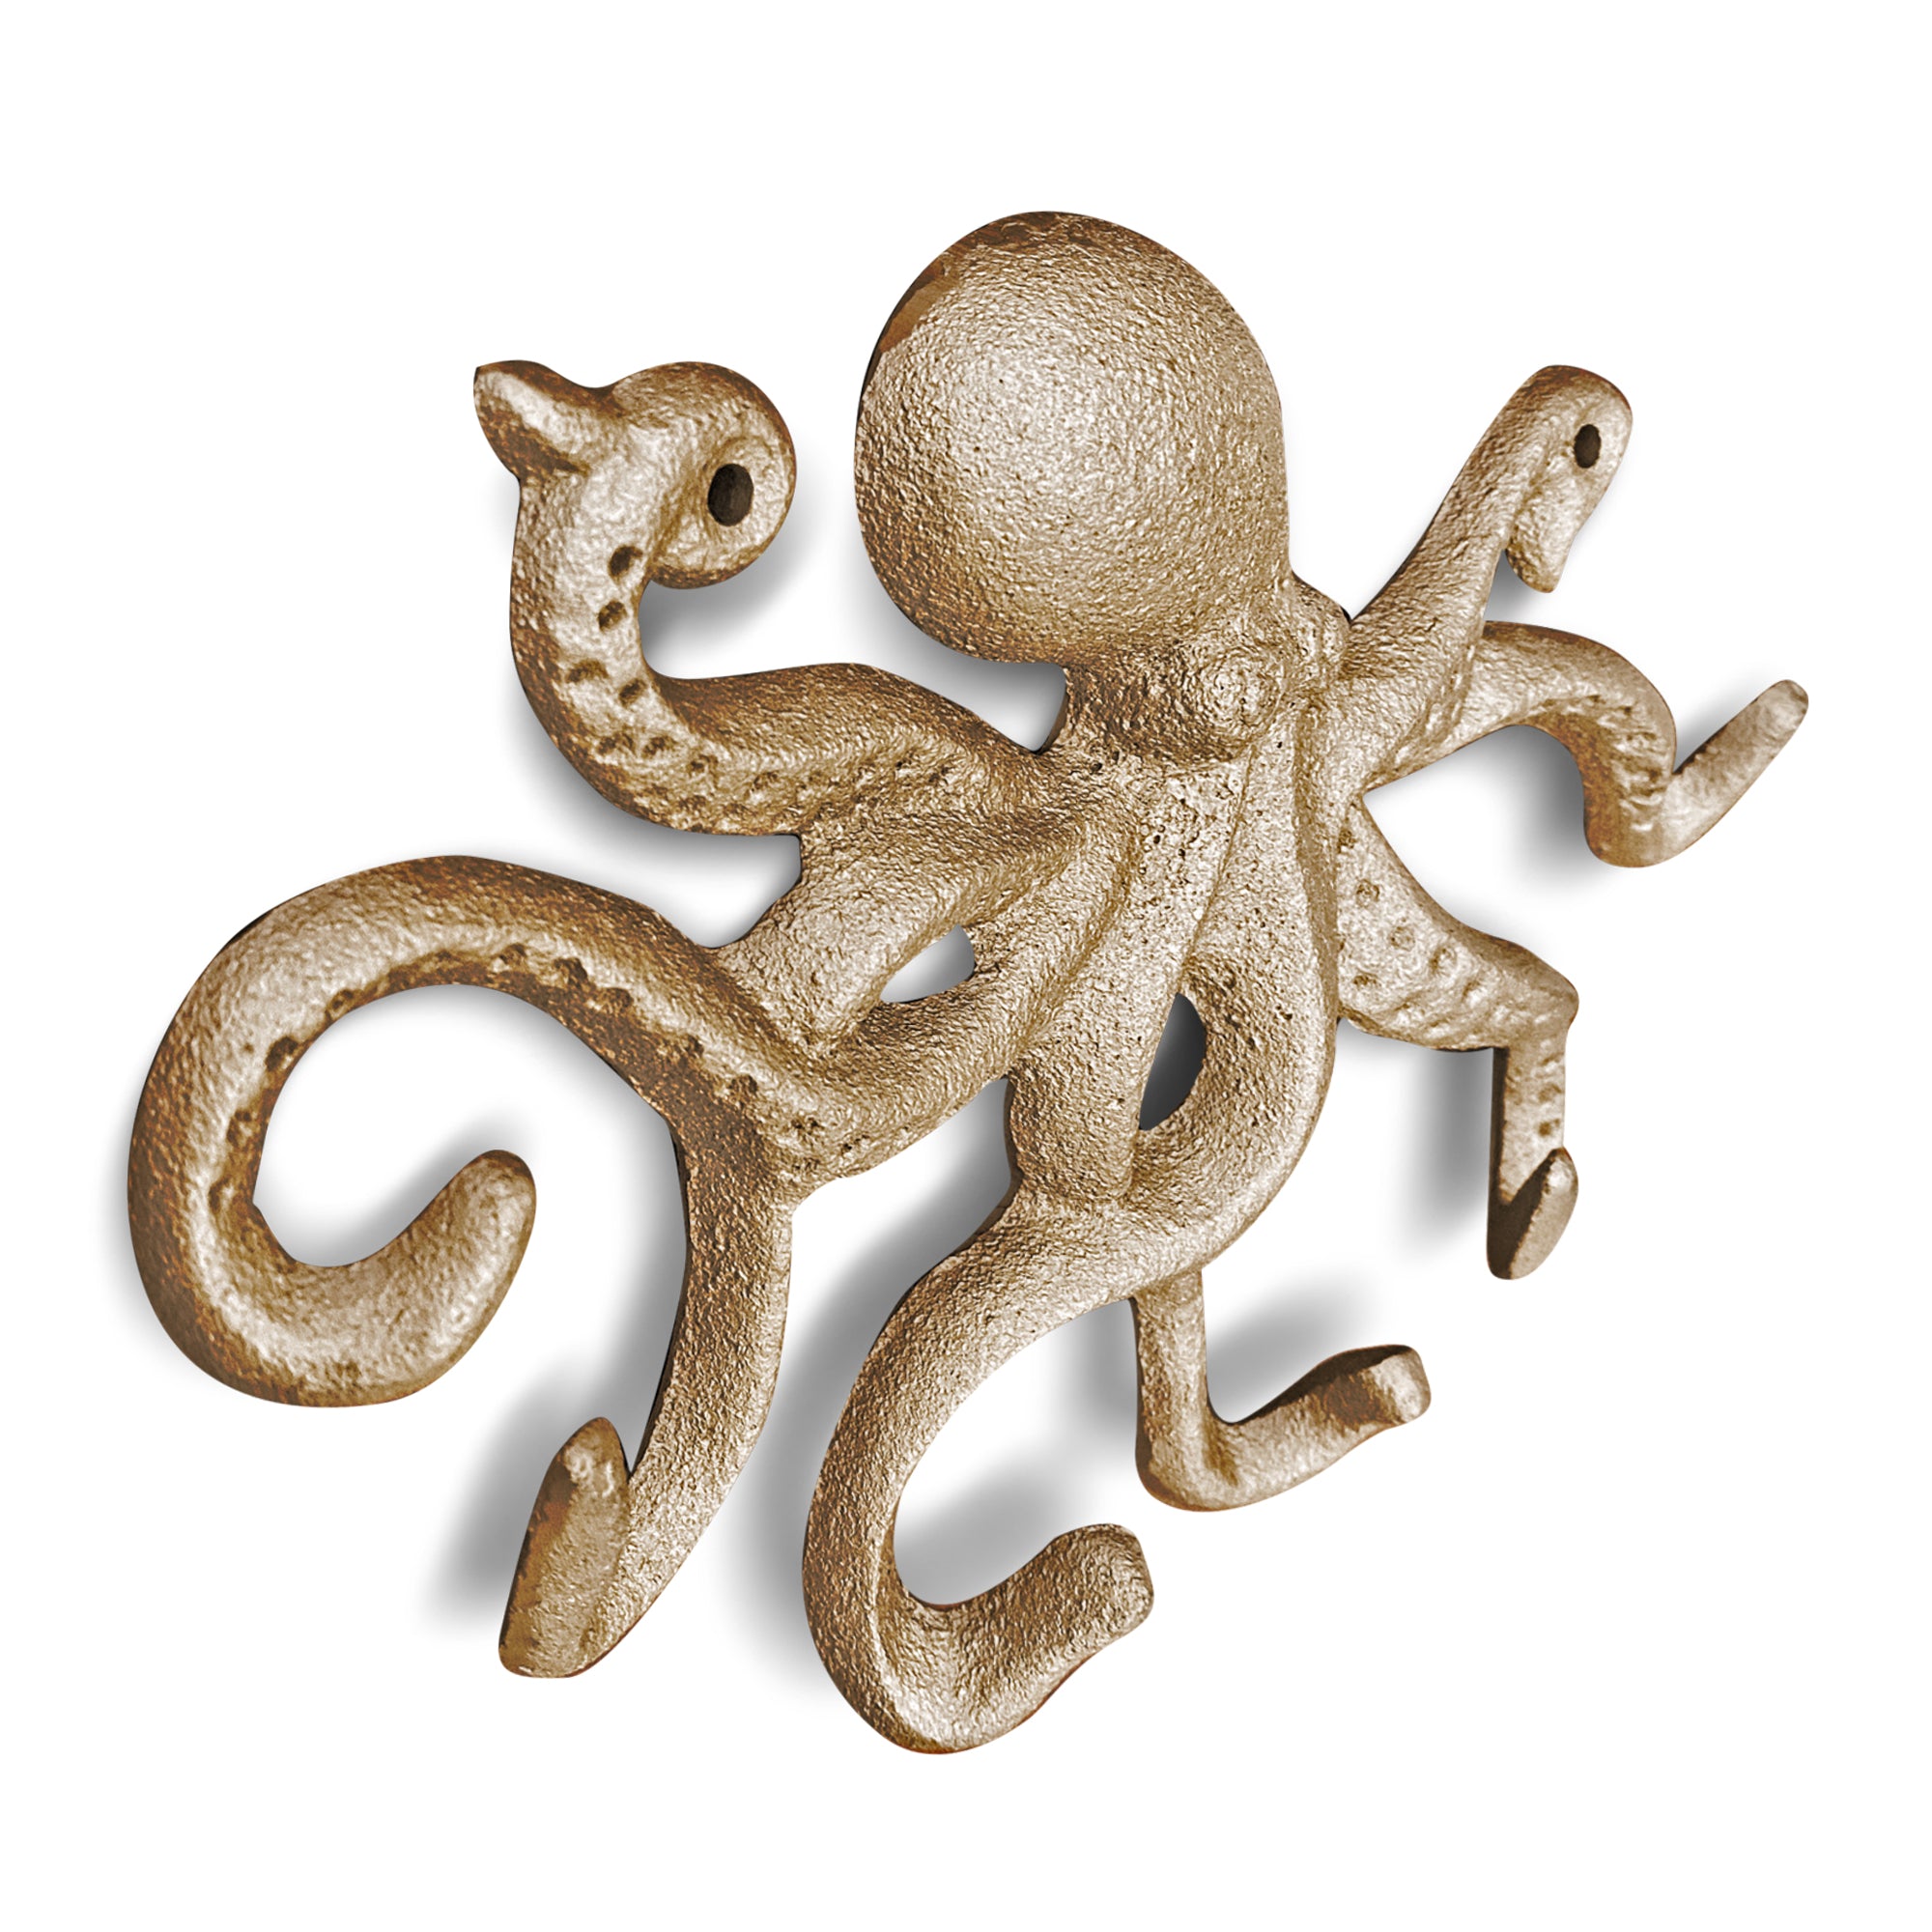 Gold Cast Iron Octopus Wall Hook, 10.5"